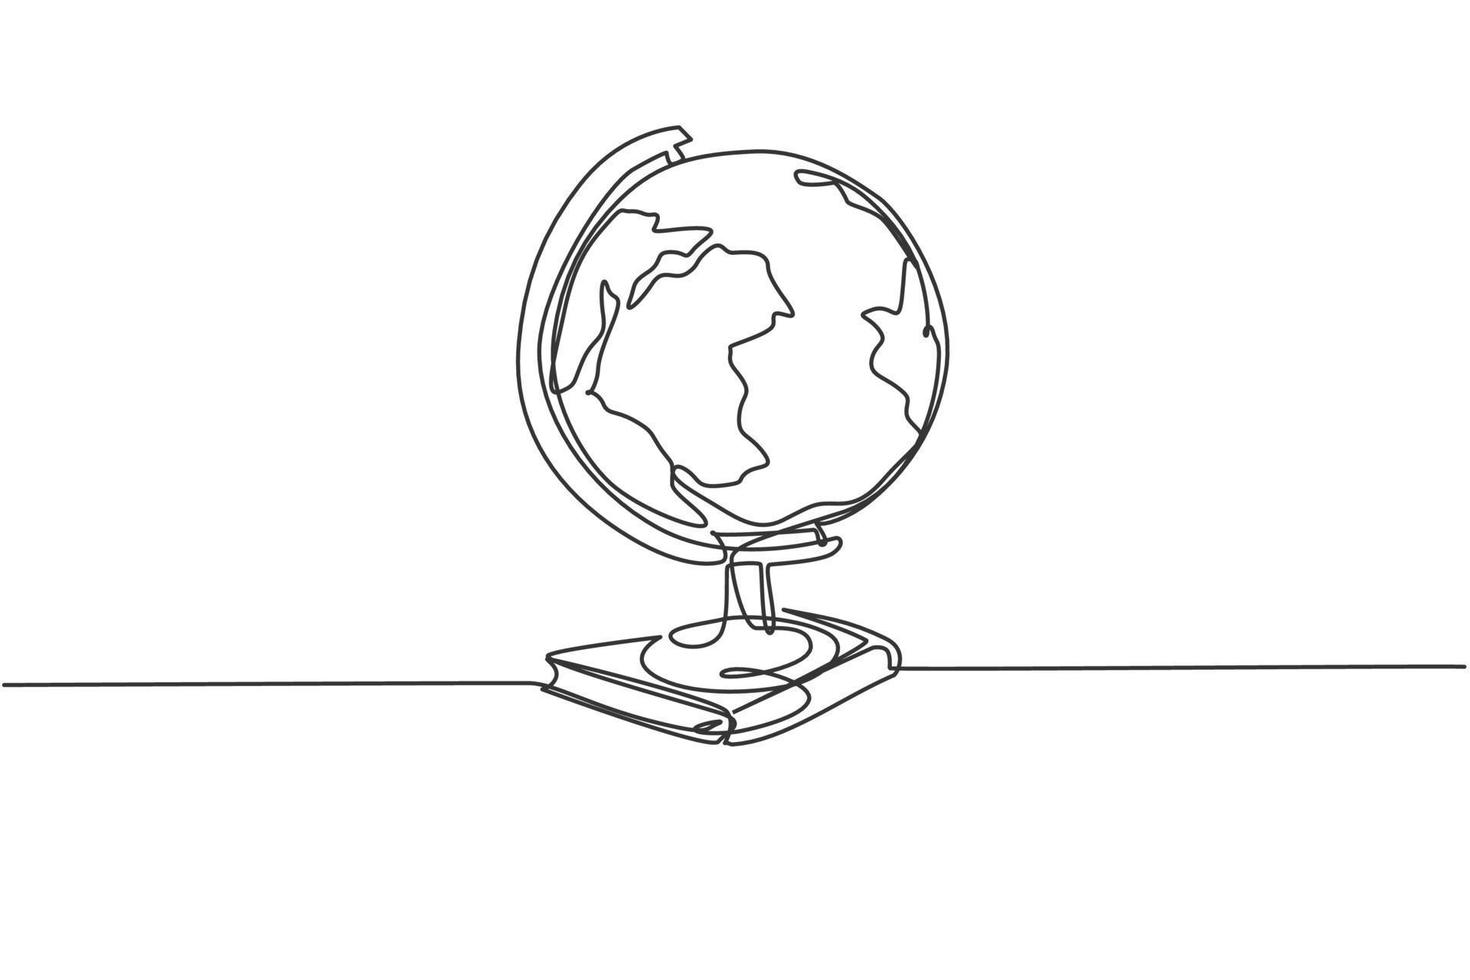 Erdkugel über Bücherstapel. Grafiksymbol für die globale Weltkarte mit einer durchgehenden Linie. einfaches einzeiliges doodle für bildungskonzept. isolierte Vektor-Illustration minimalistisches Design auf weißem Hintergrund vektor